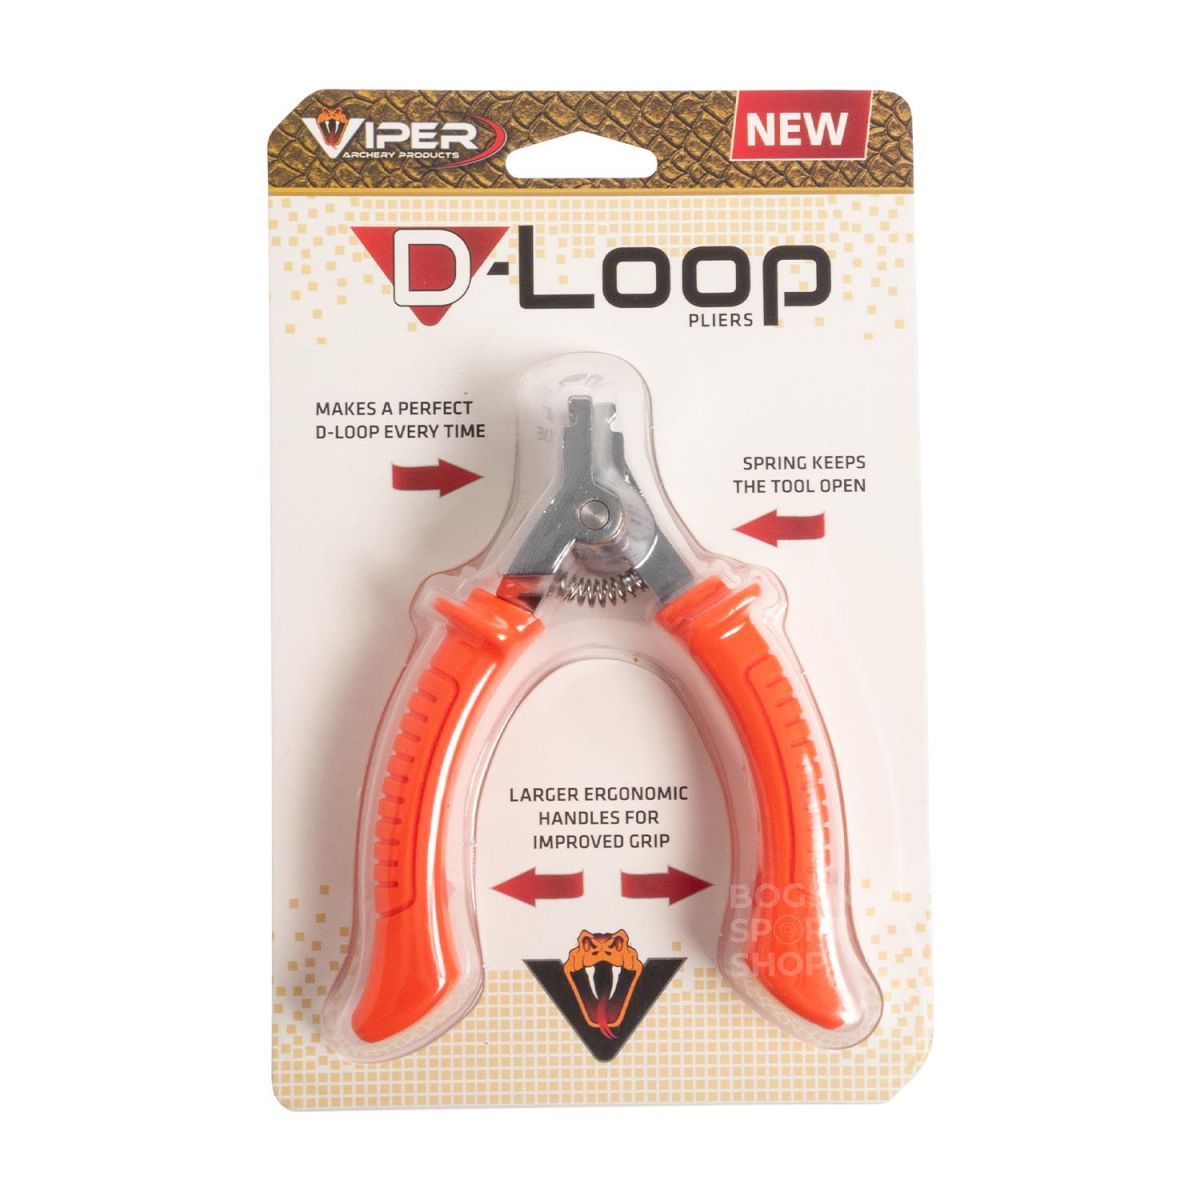  Buy Viper D-Loop Pliers online